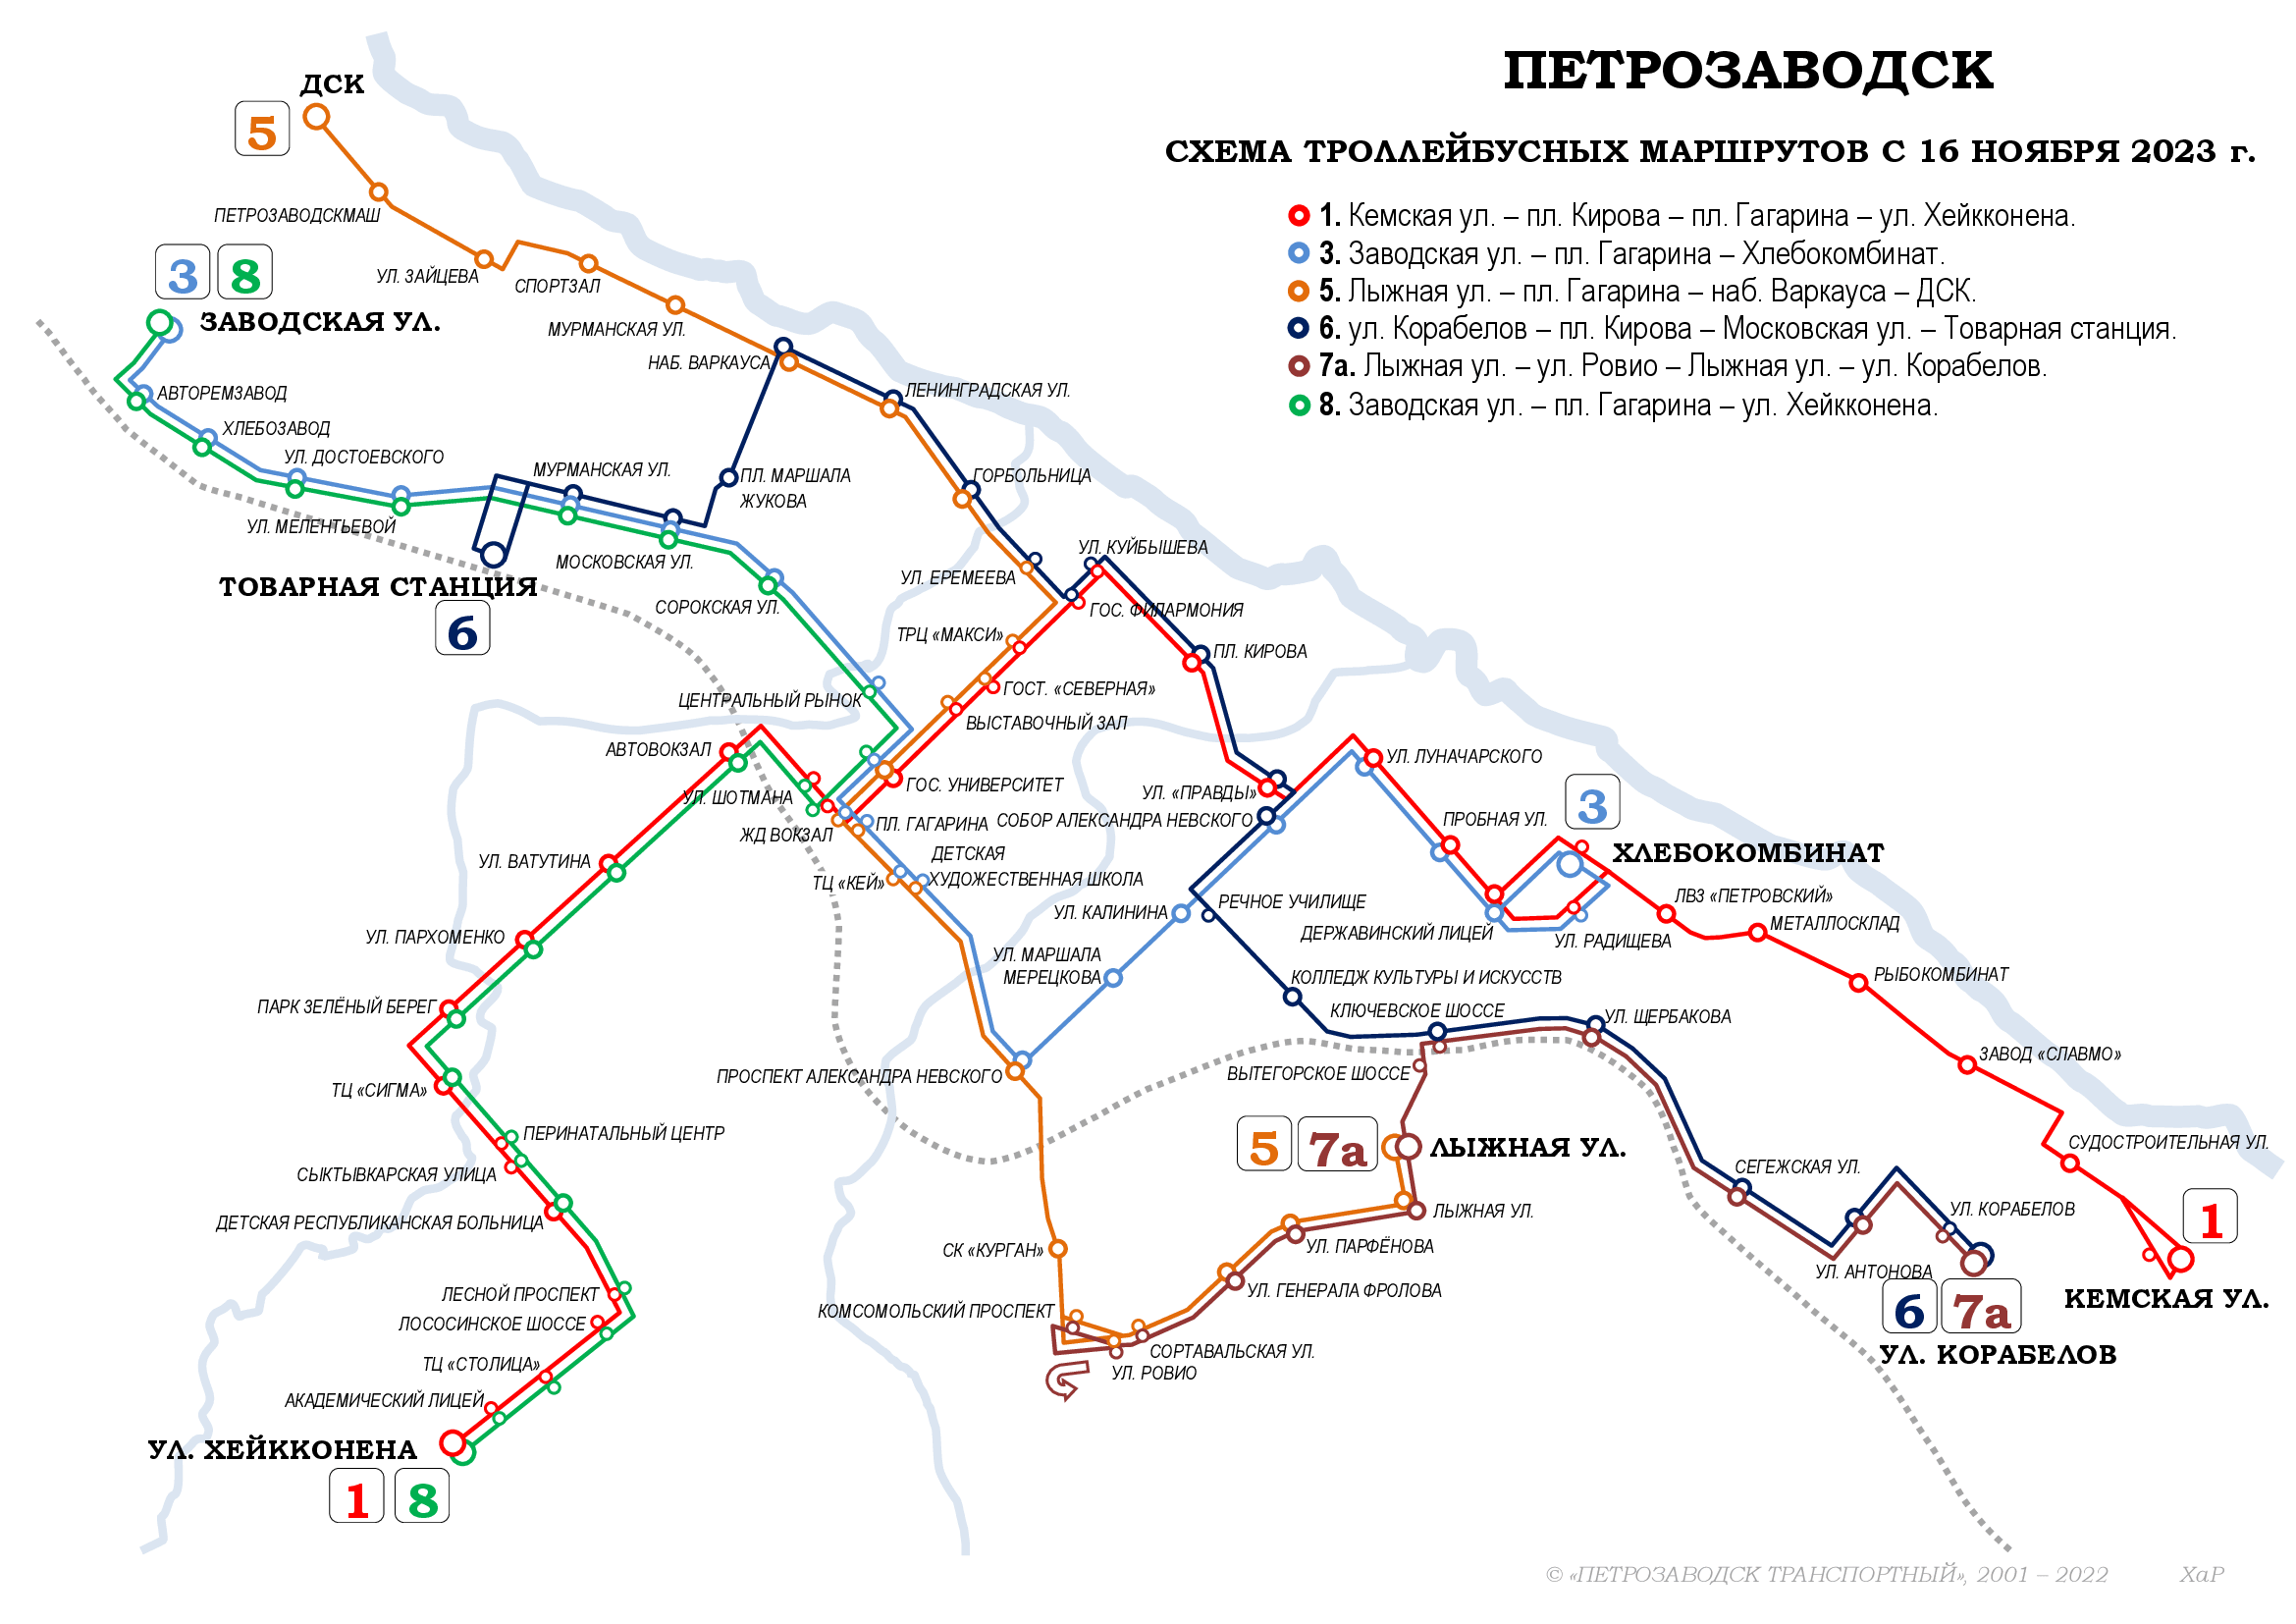 Петрозаводск — Схемы